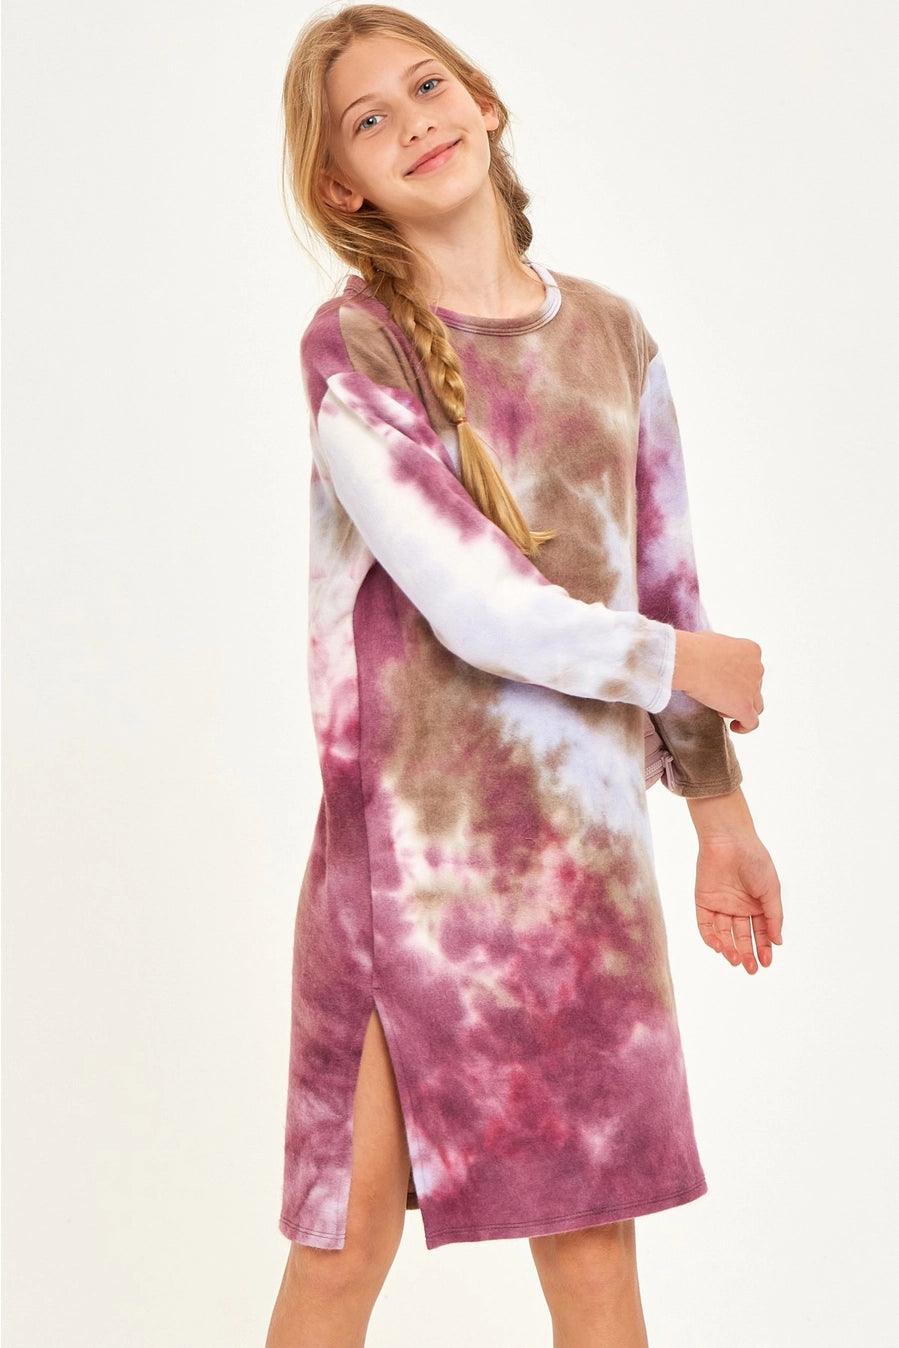 Junebee Tye Dye Dress - Sprig Flower Co